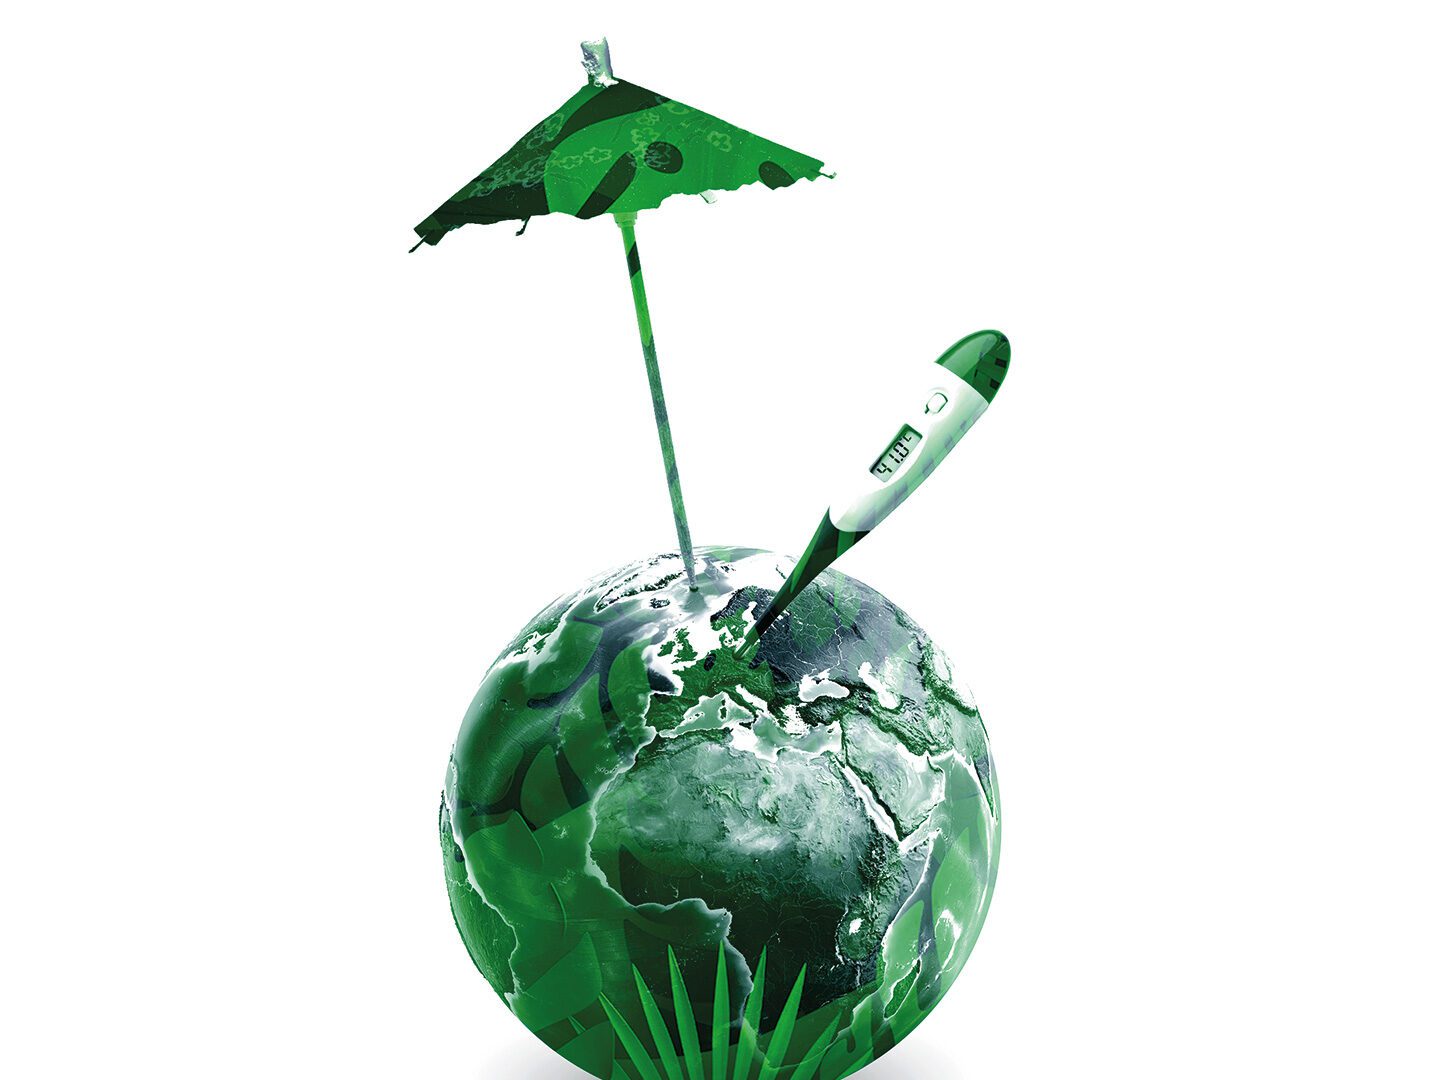 Illustration zu Netto-Null-Emissionen zeigt Weltkugel, Fieberthermometer und Sonnenschirm